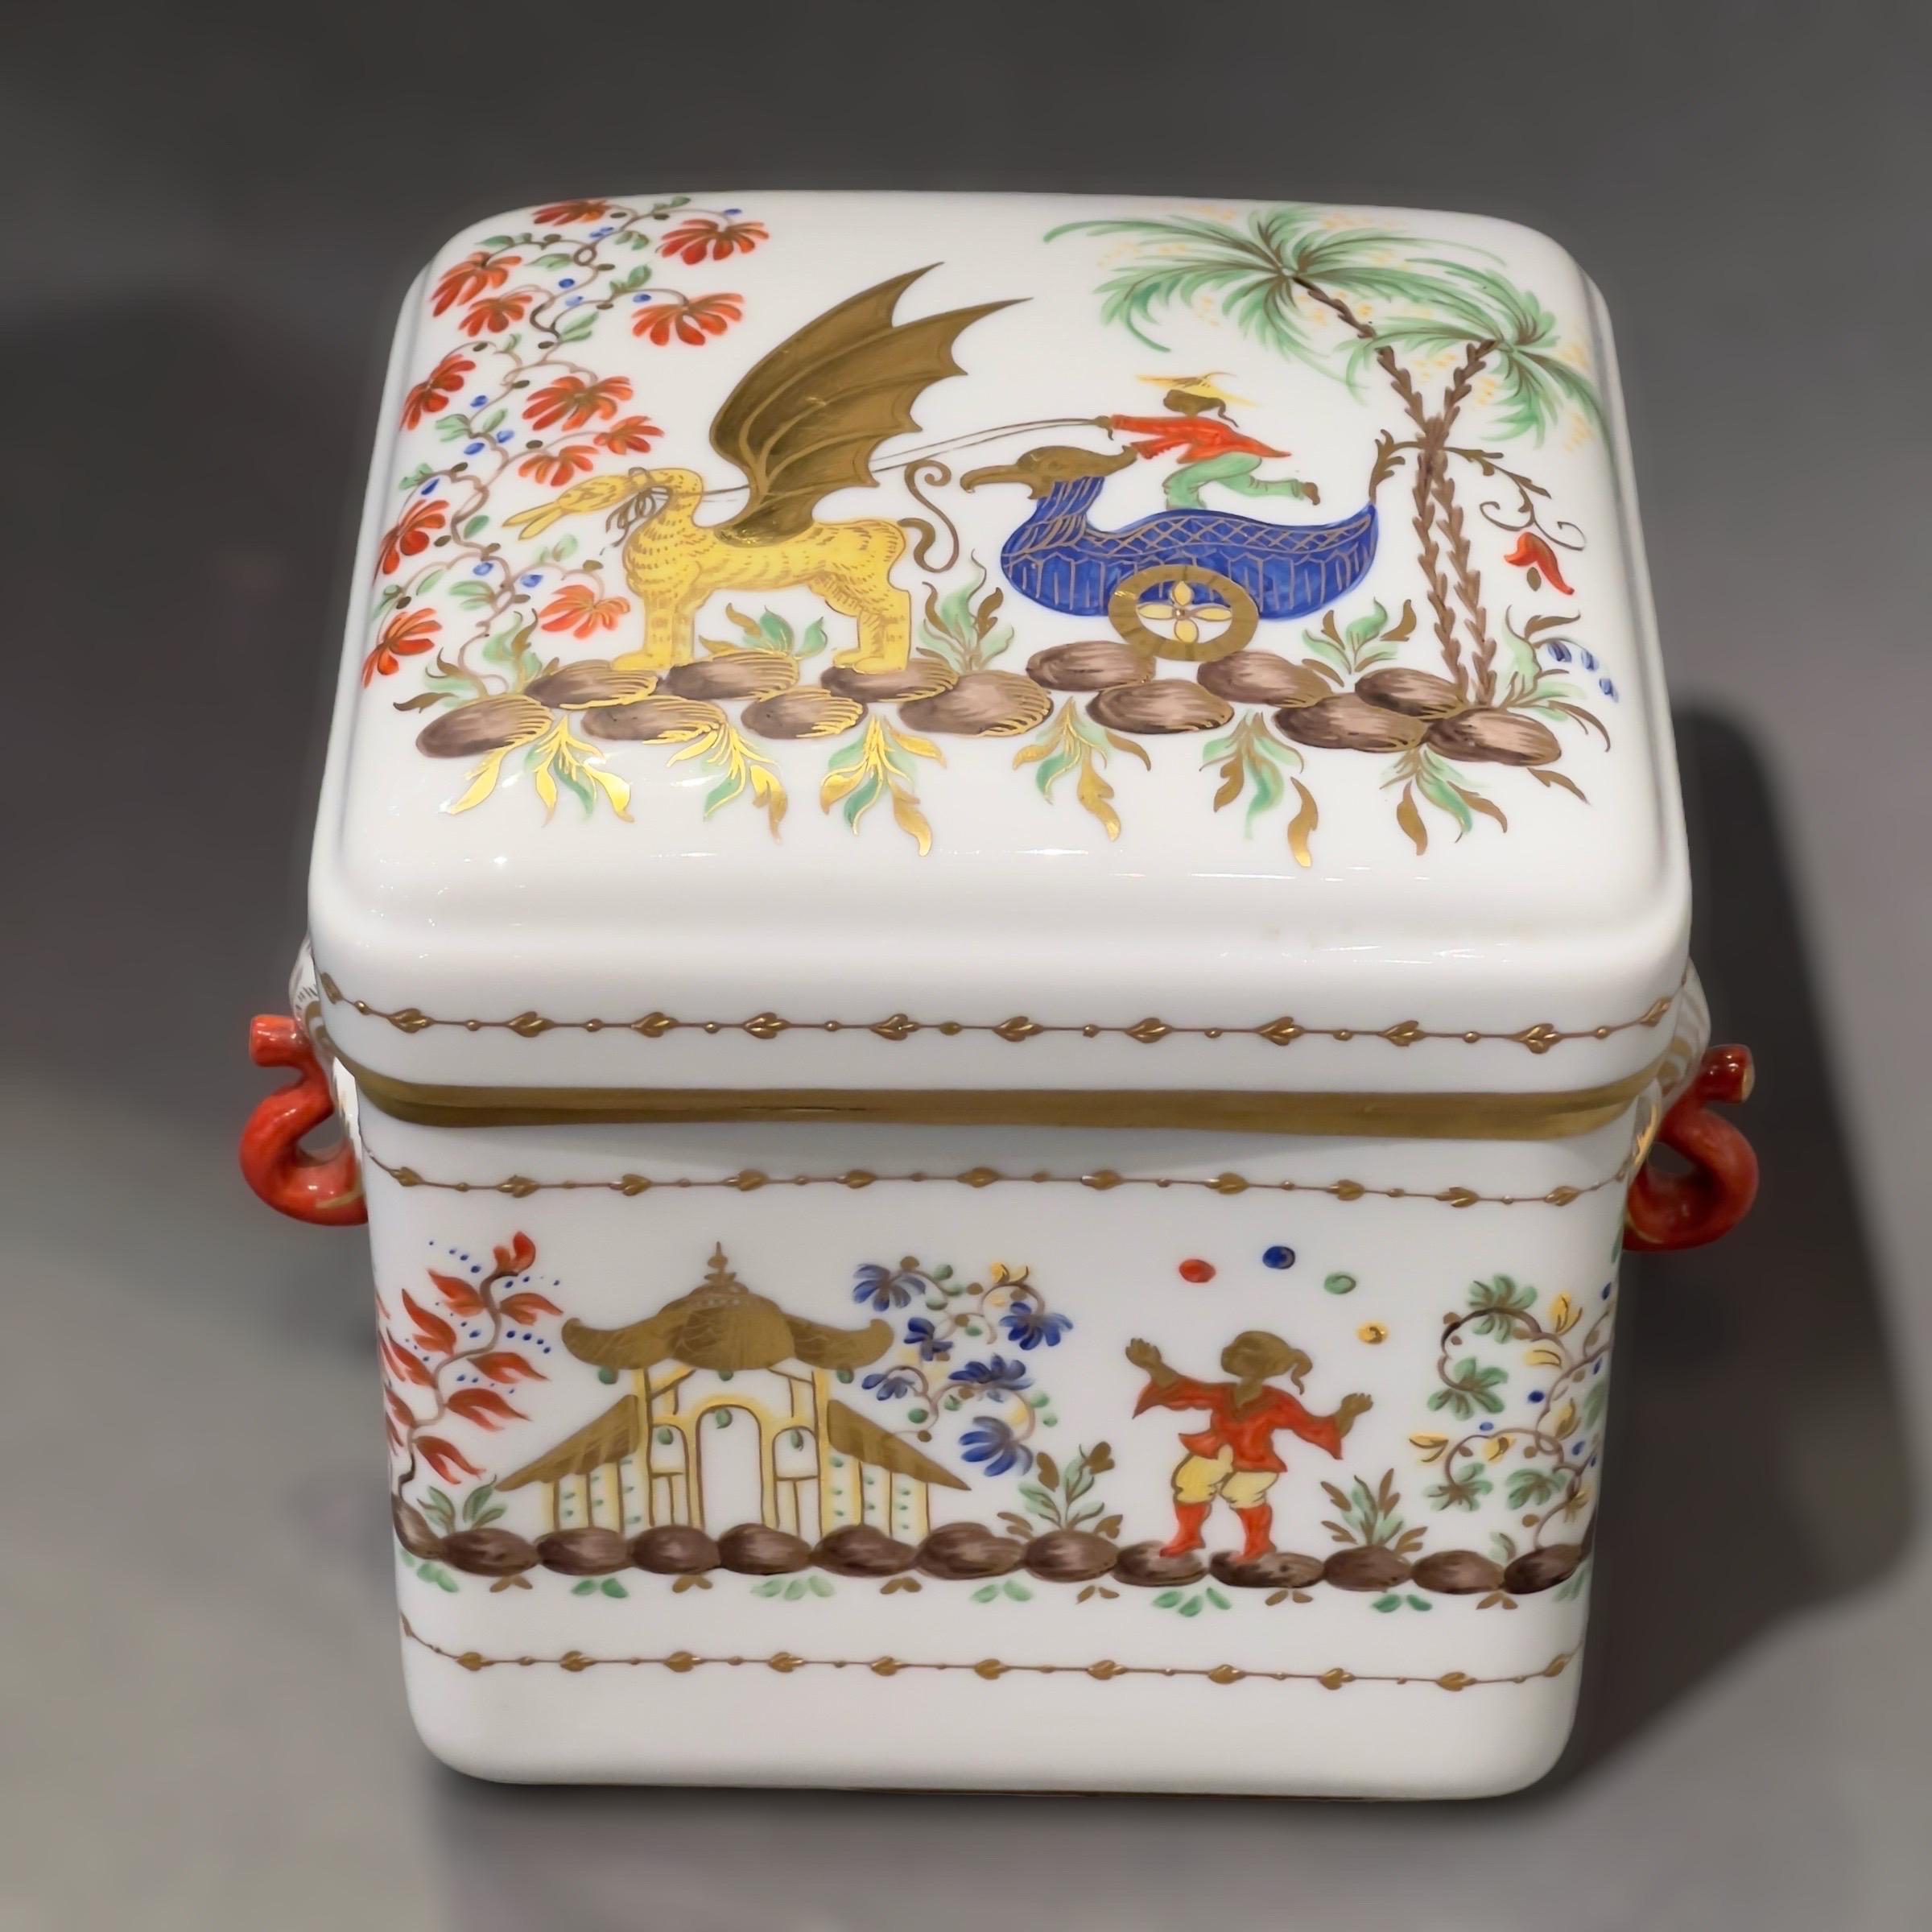 Une grande boîte en porcelaine fabriquée par Le Tallec dans le motif du Cirque Chinois.
Magnifiques poignées latérales en forme d'éléphant.
Le motif du Cirque Chinois a été créé à l'origine par Camille Le Tallec pour Tiffany & Co.
Il n'est plus